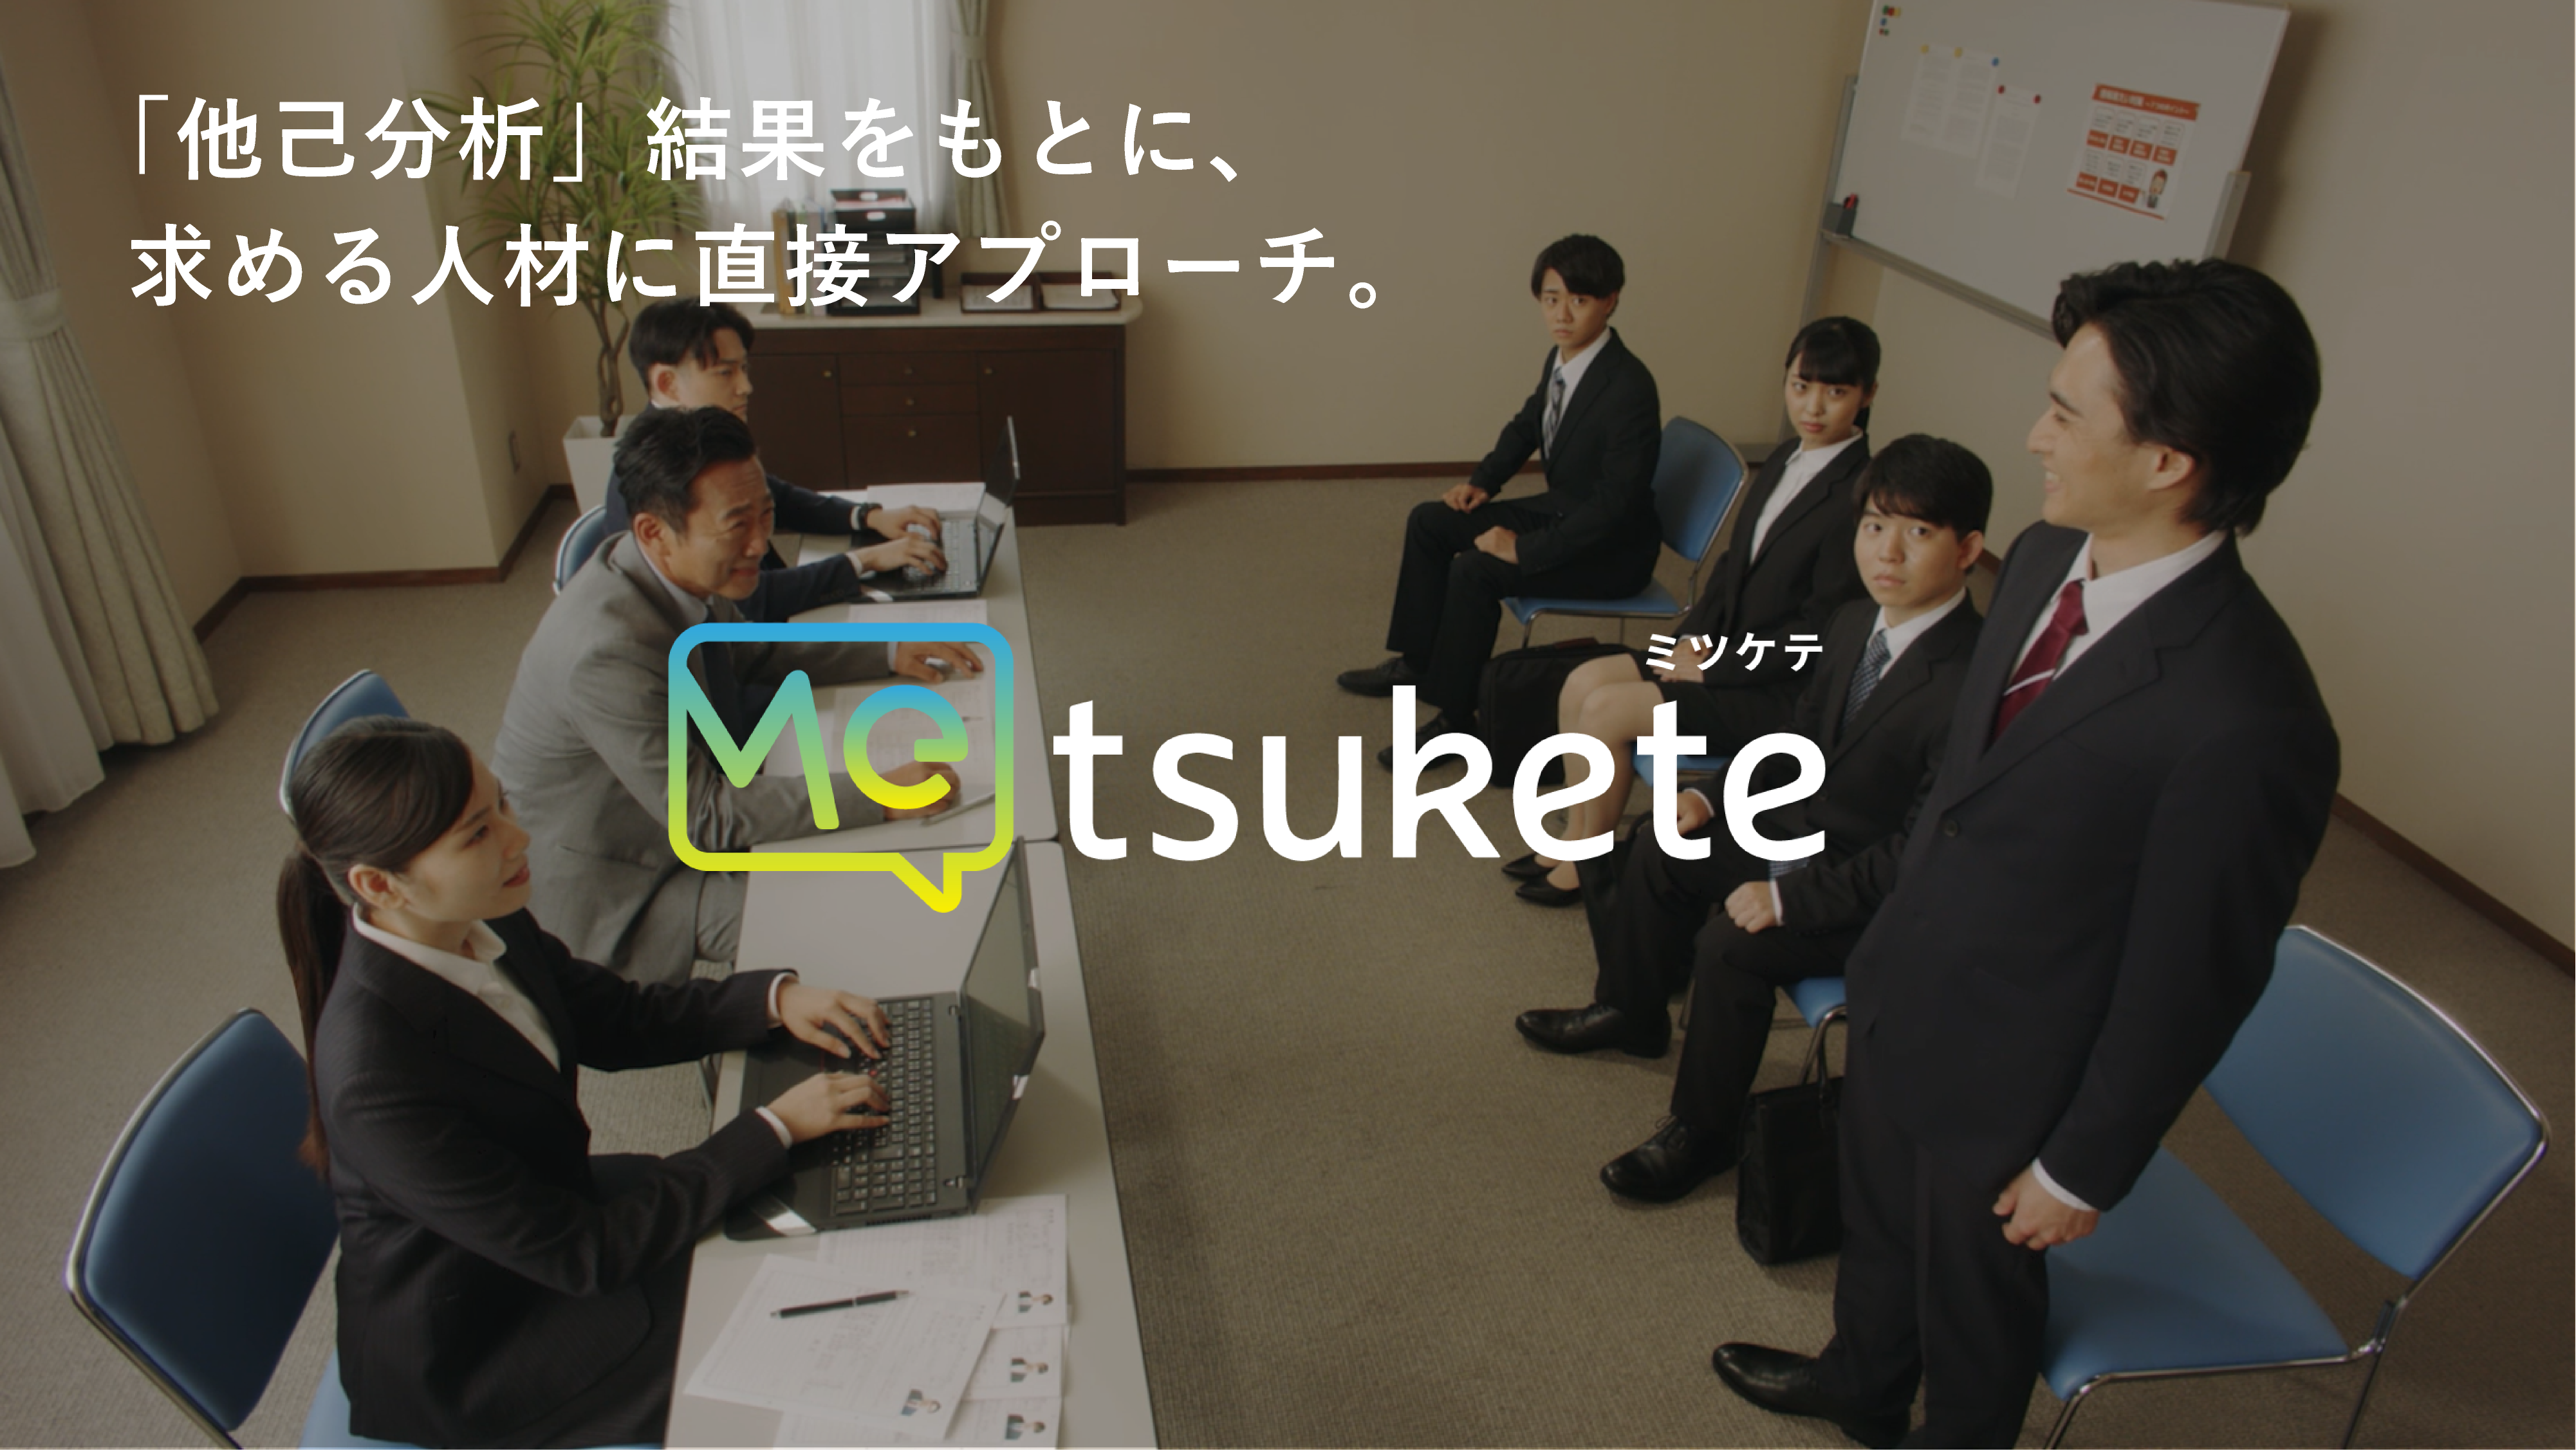 弊社開発のスカウト型就活アプリ<br>「Metsukete」のプロモーション動画を公開しました